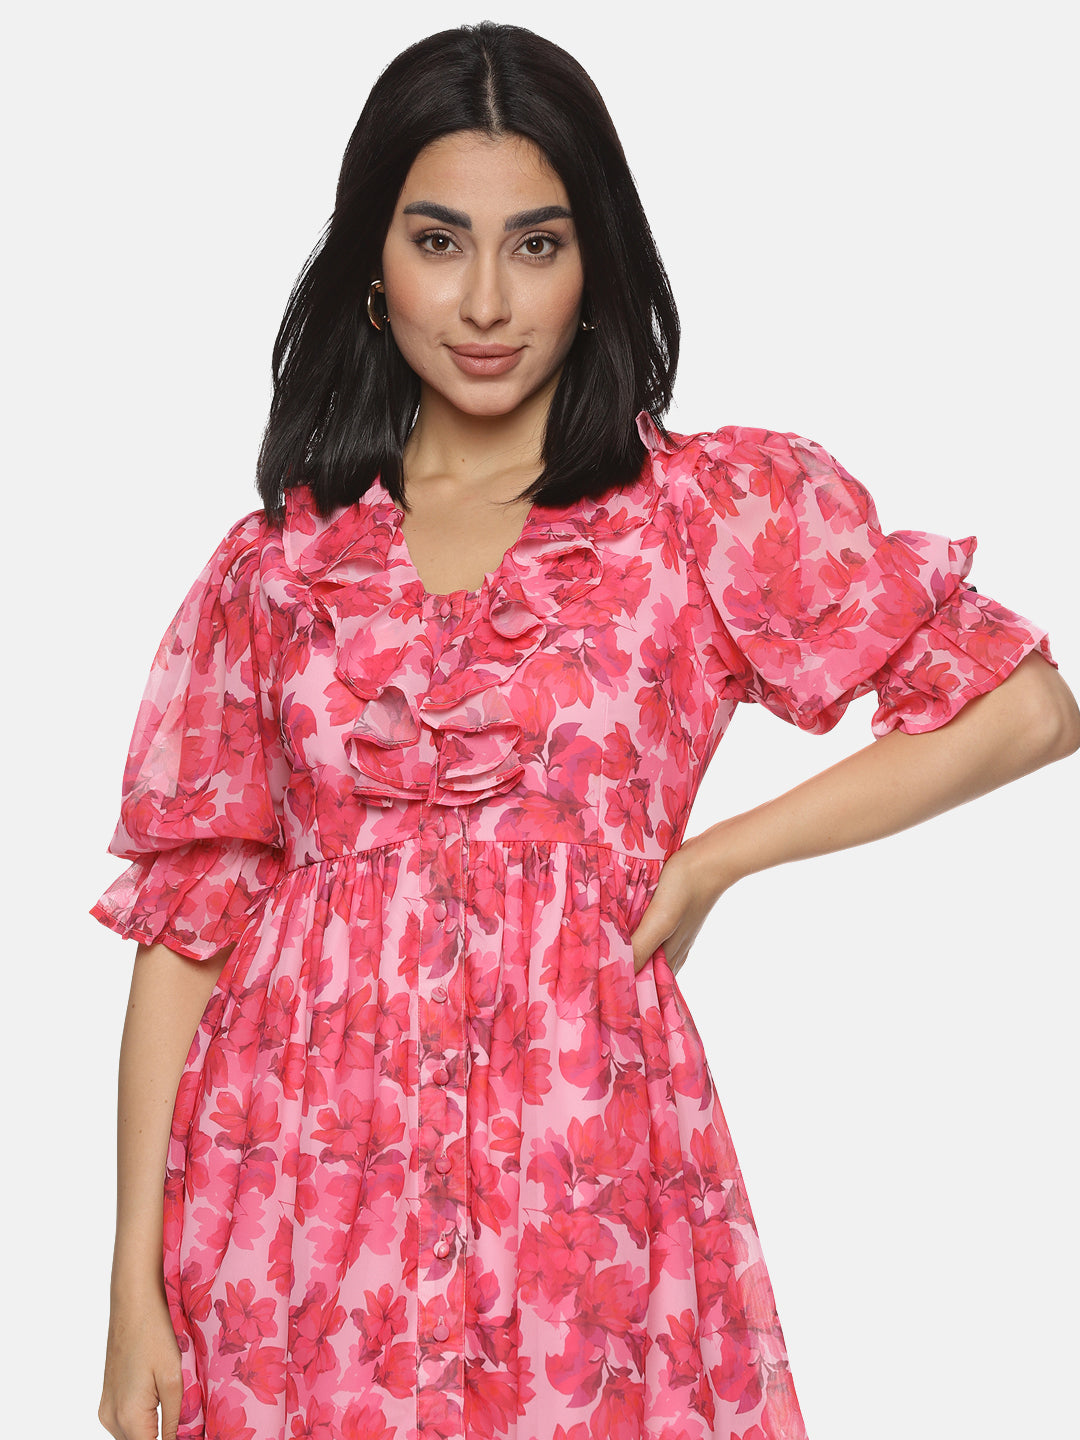 IS.U Floral Pink Button Down Mini Dress